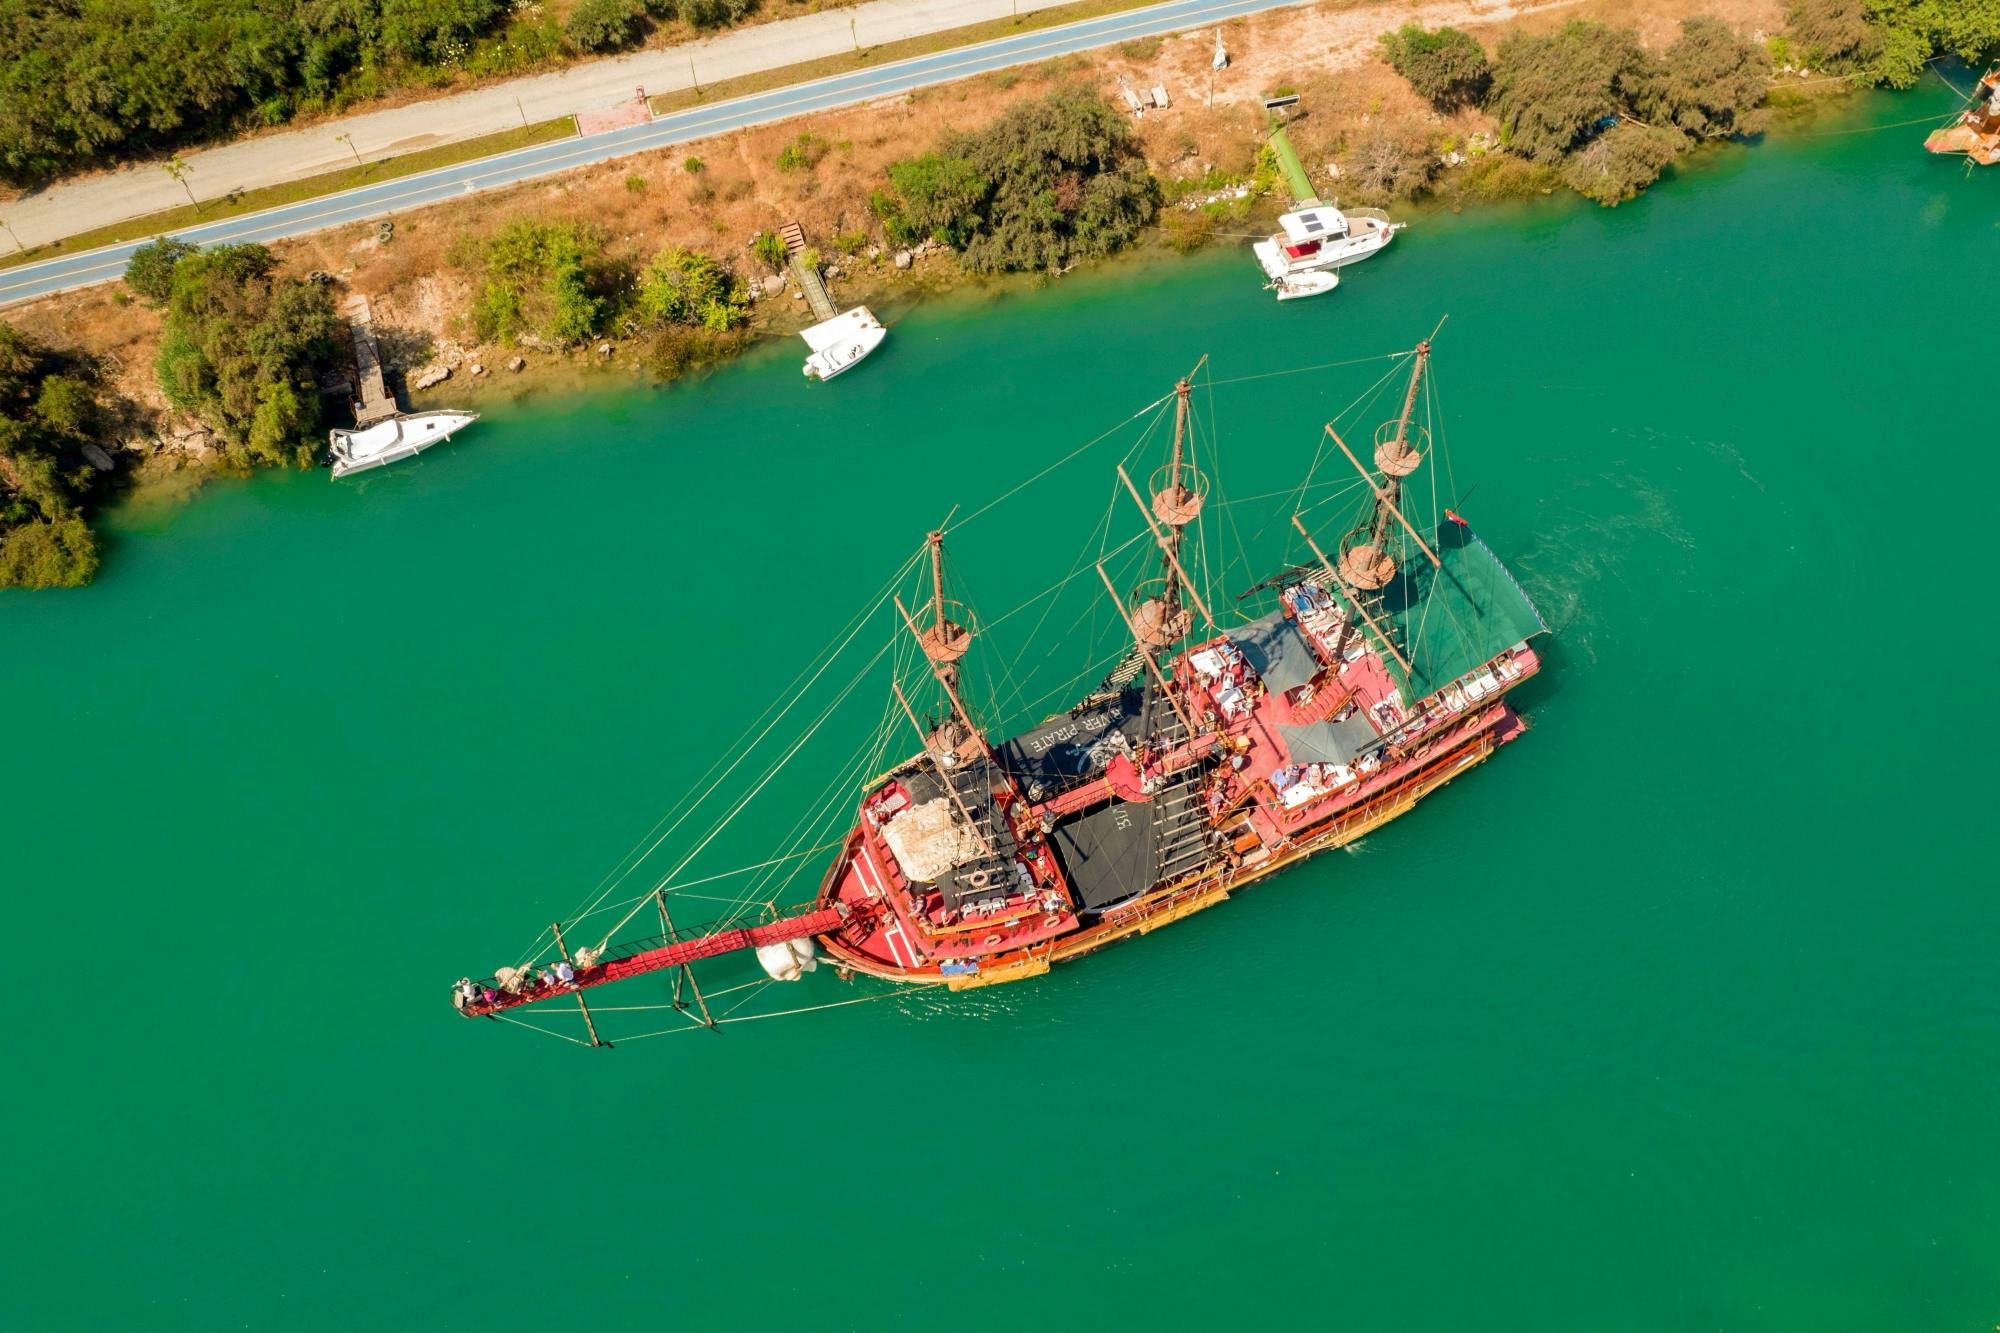 Piraten-Bootsfahrt ab Manavgat